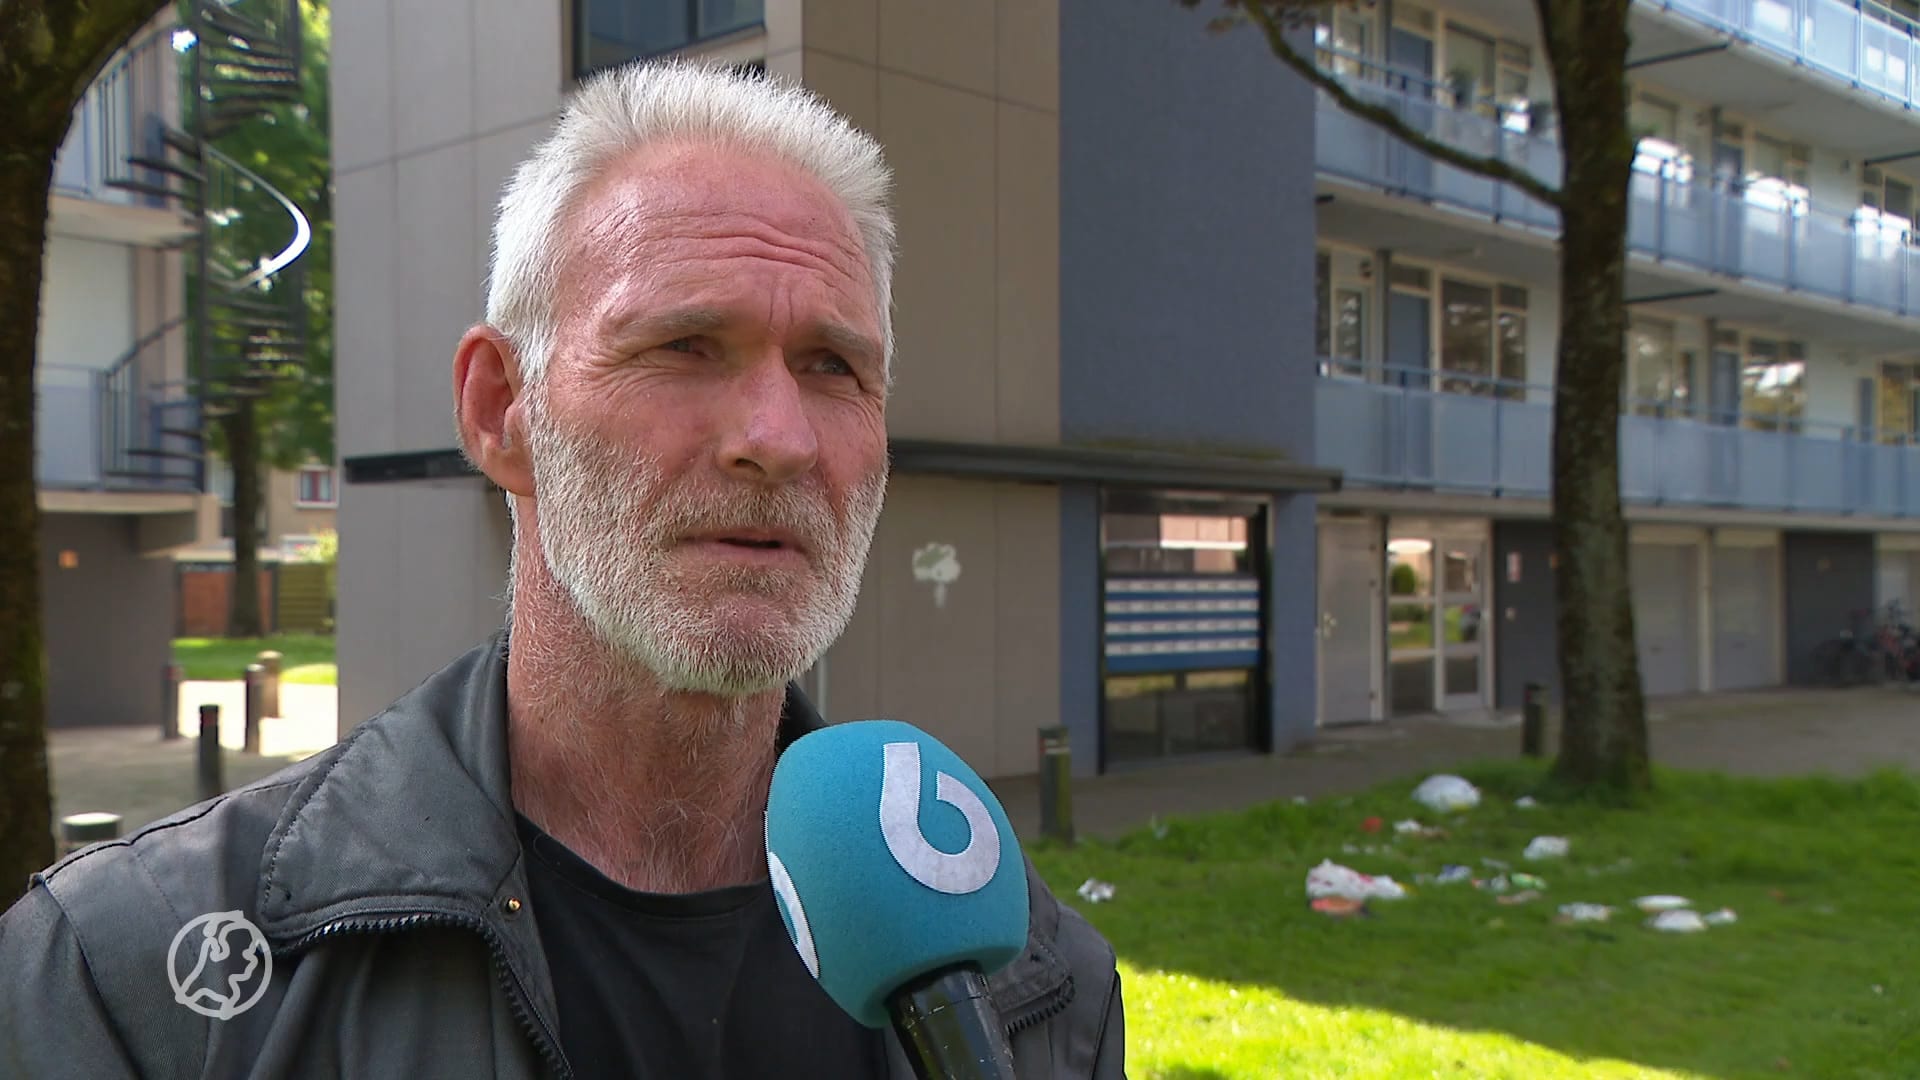 Onrust in Zutphen door escalerende drugsoverlast: maat is vol voor bewoners